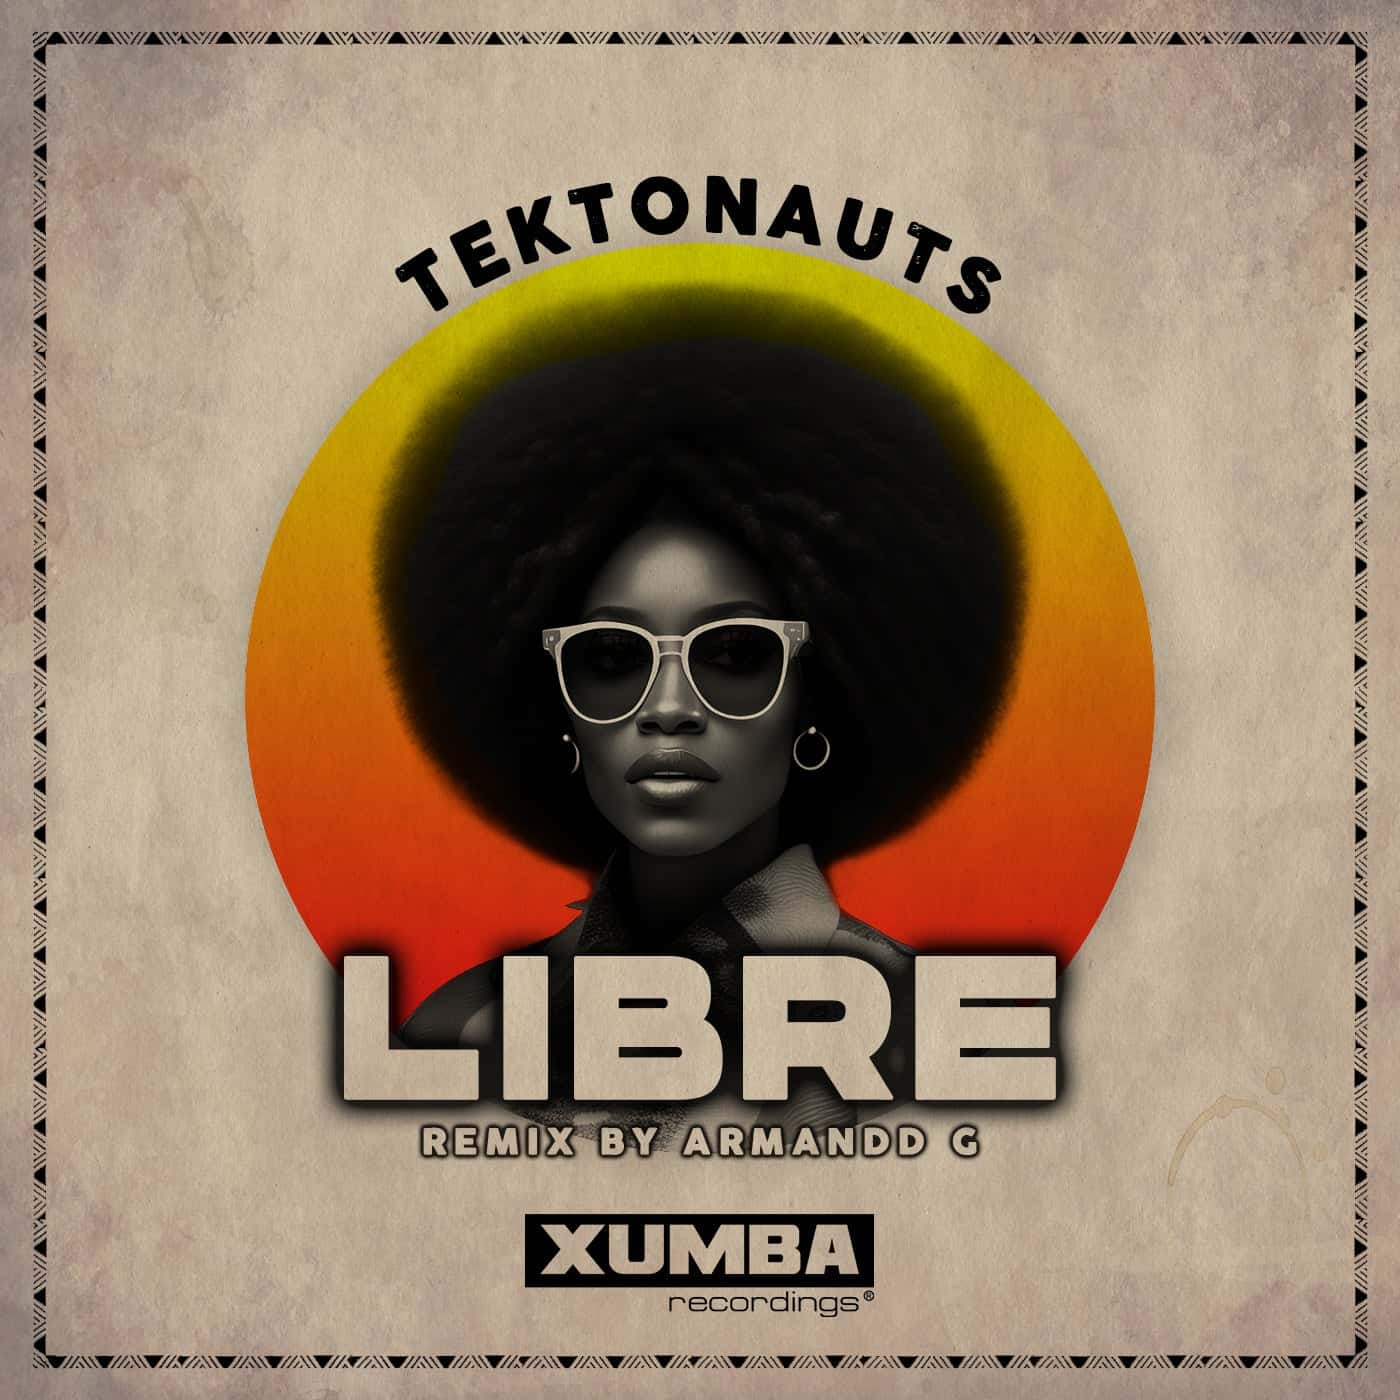 image cover: Tektonauts - Libre